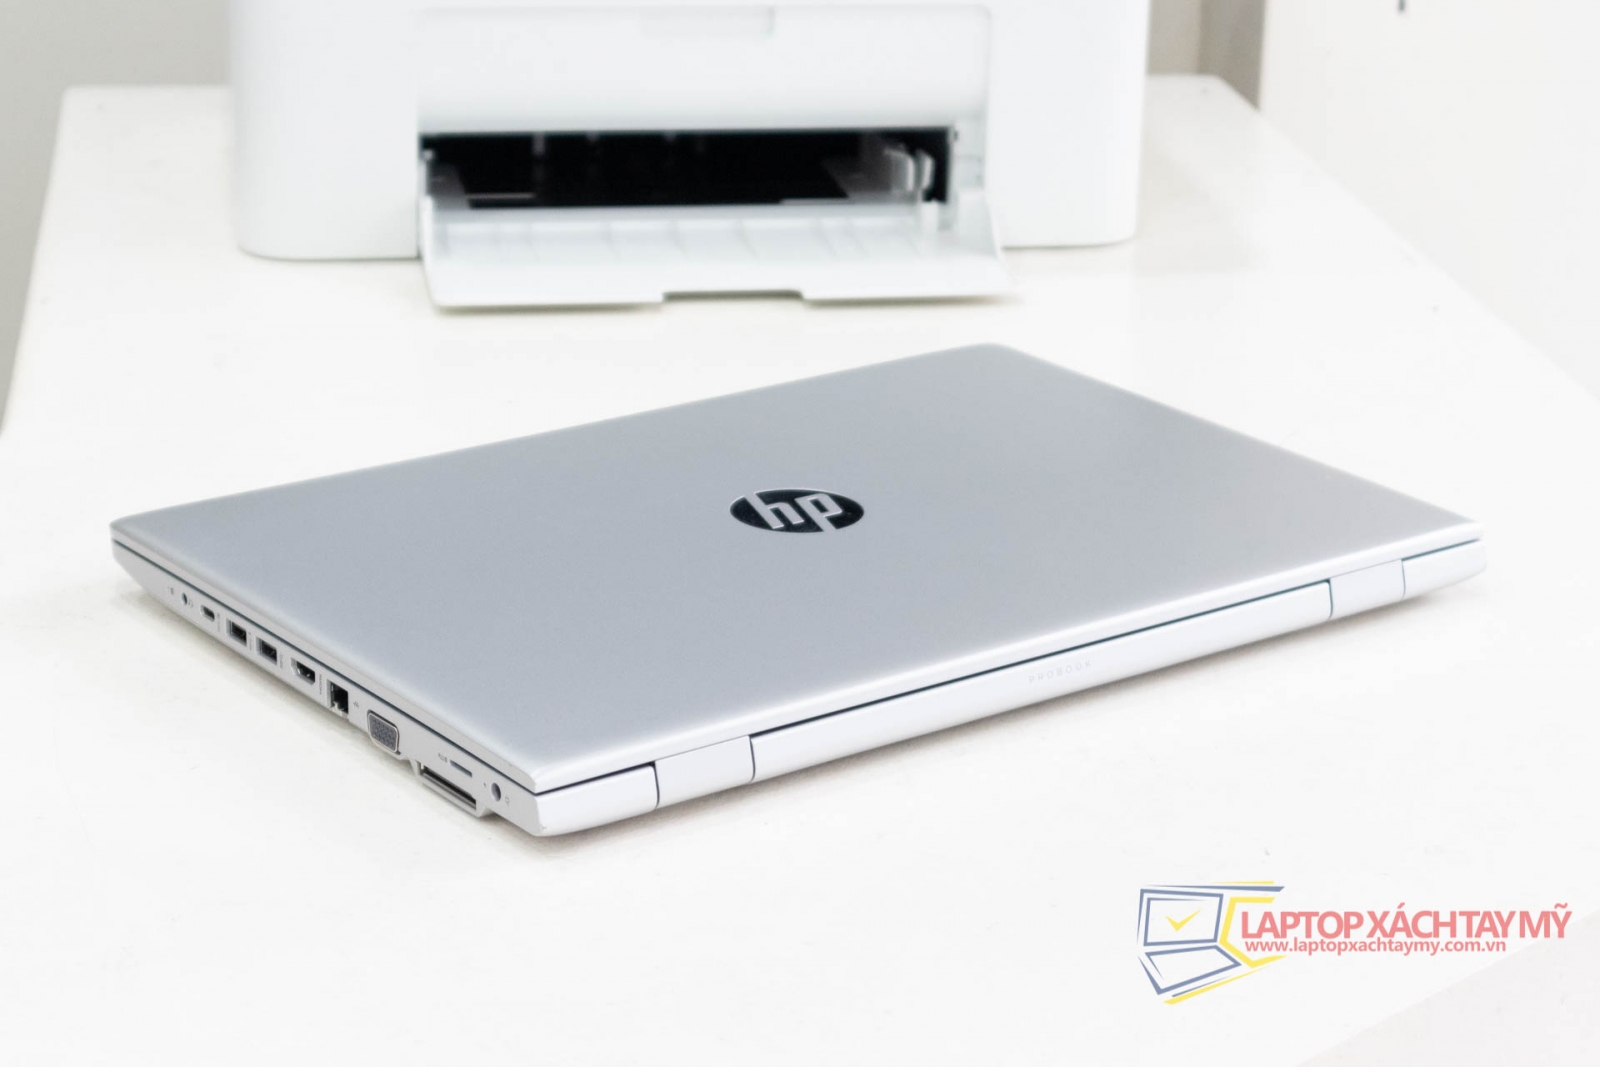 HP Probook 650 G4 - Intel I7 8650U, Ram 16G, SSD 256 Gb, HDD 500Gb